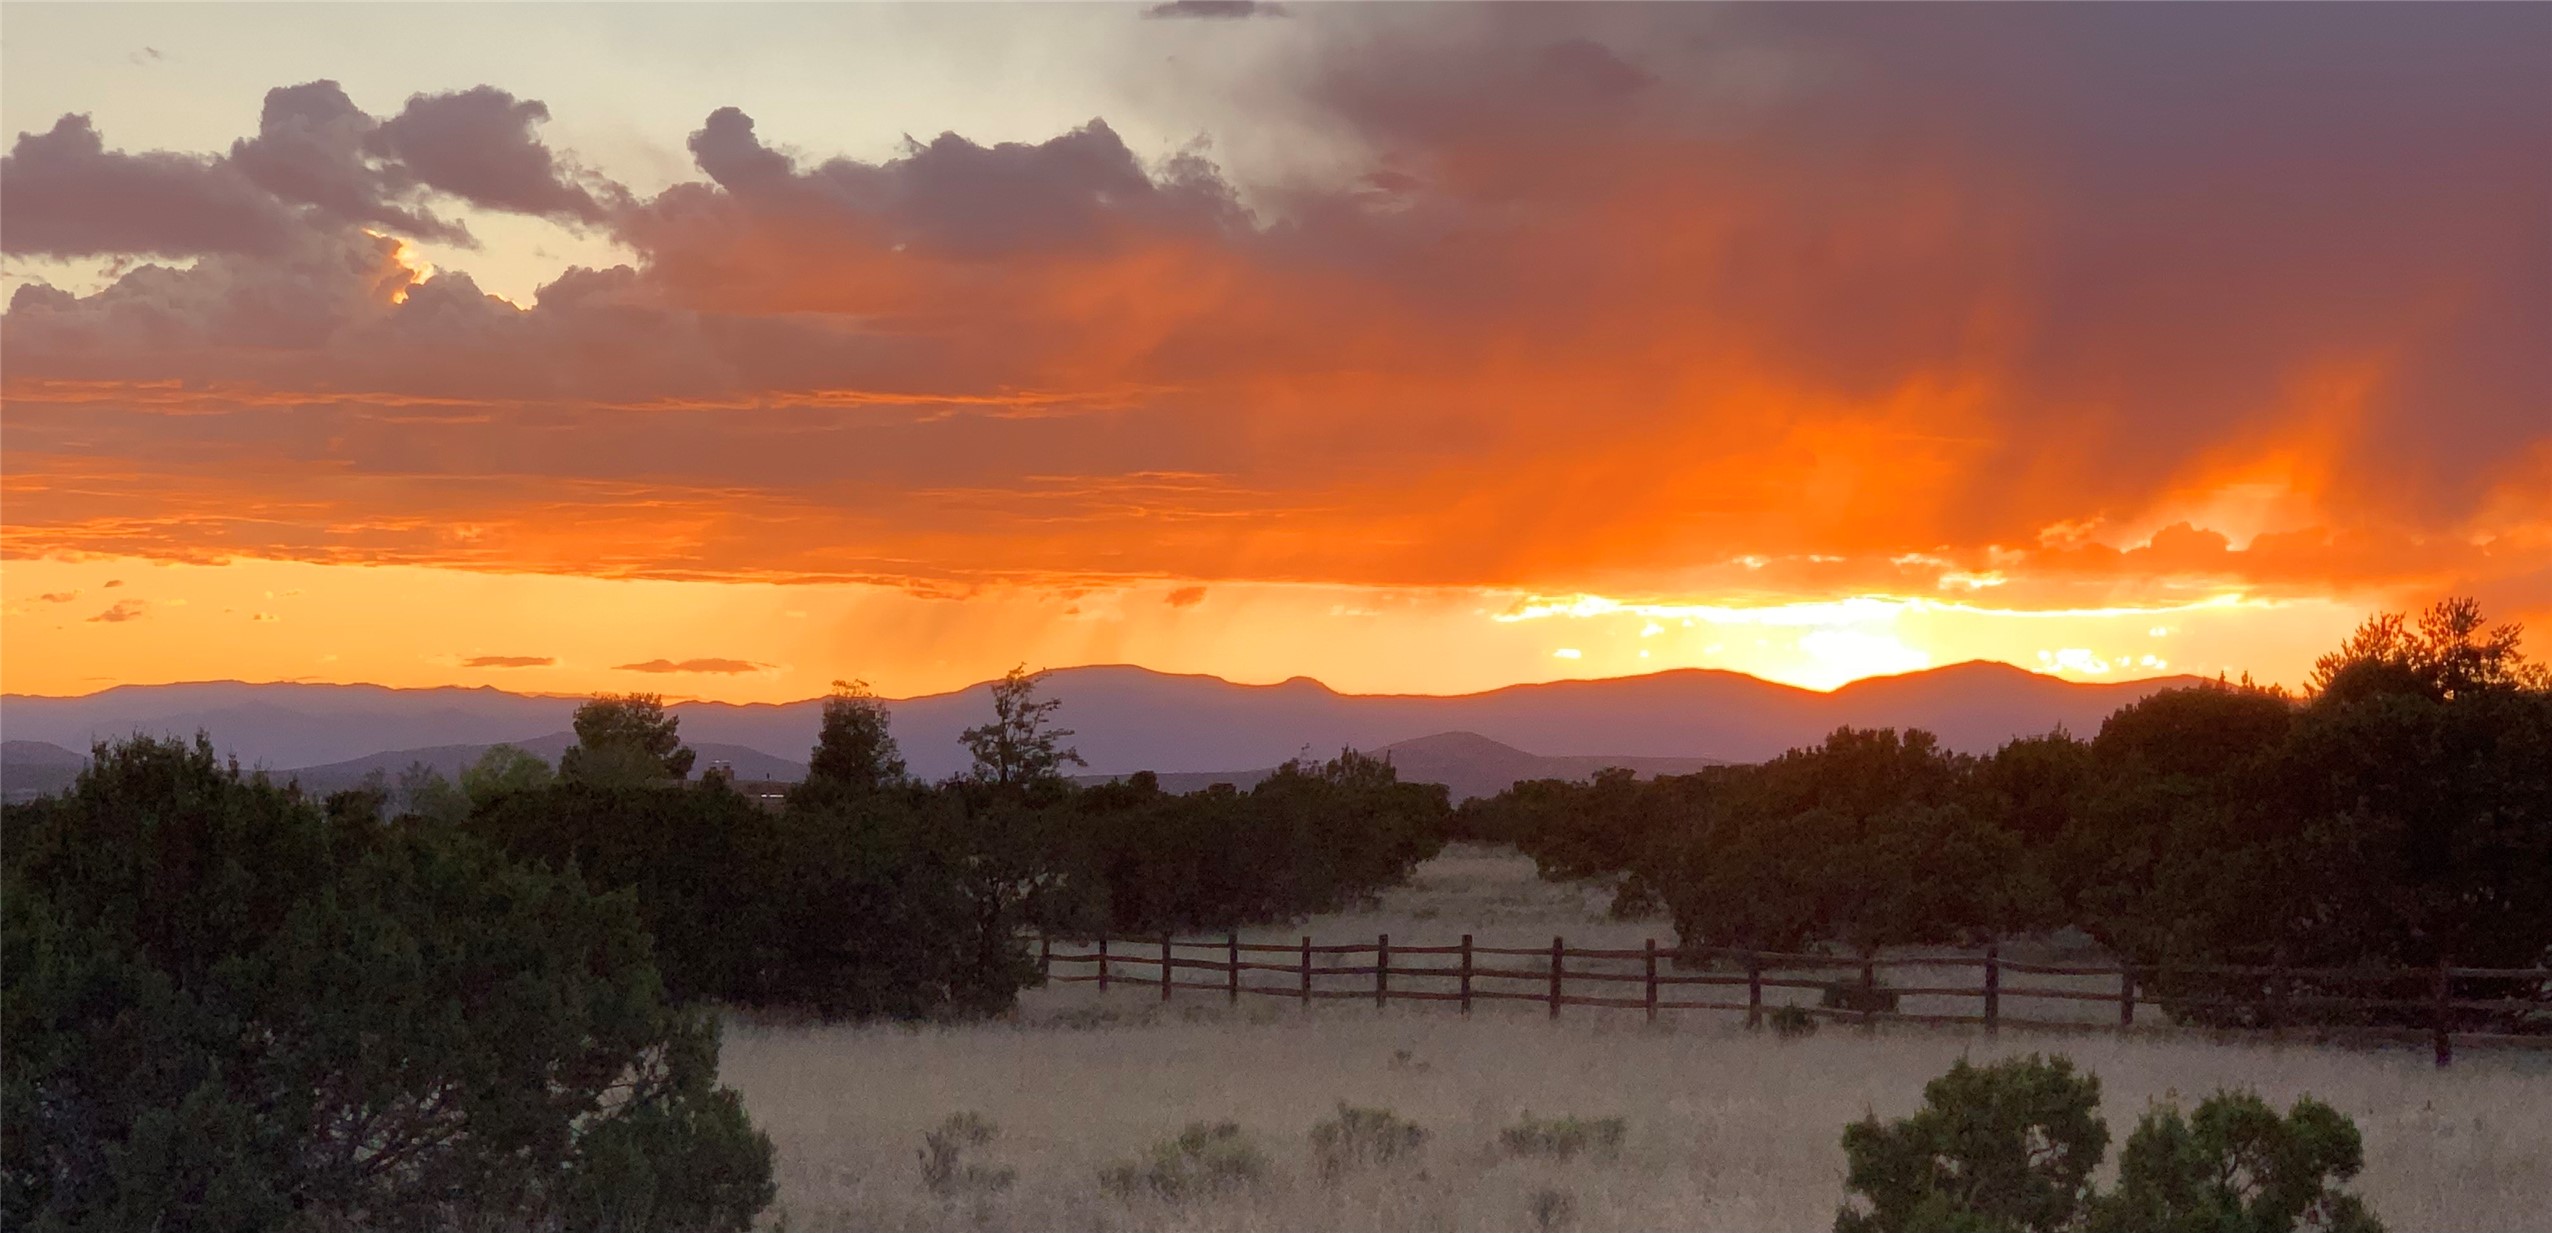 29 Camino del Cielo, Santa Fe, New Mexico 87506, ,Land,For Sale,29 Camino del Cielo,202400346